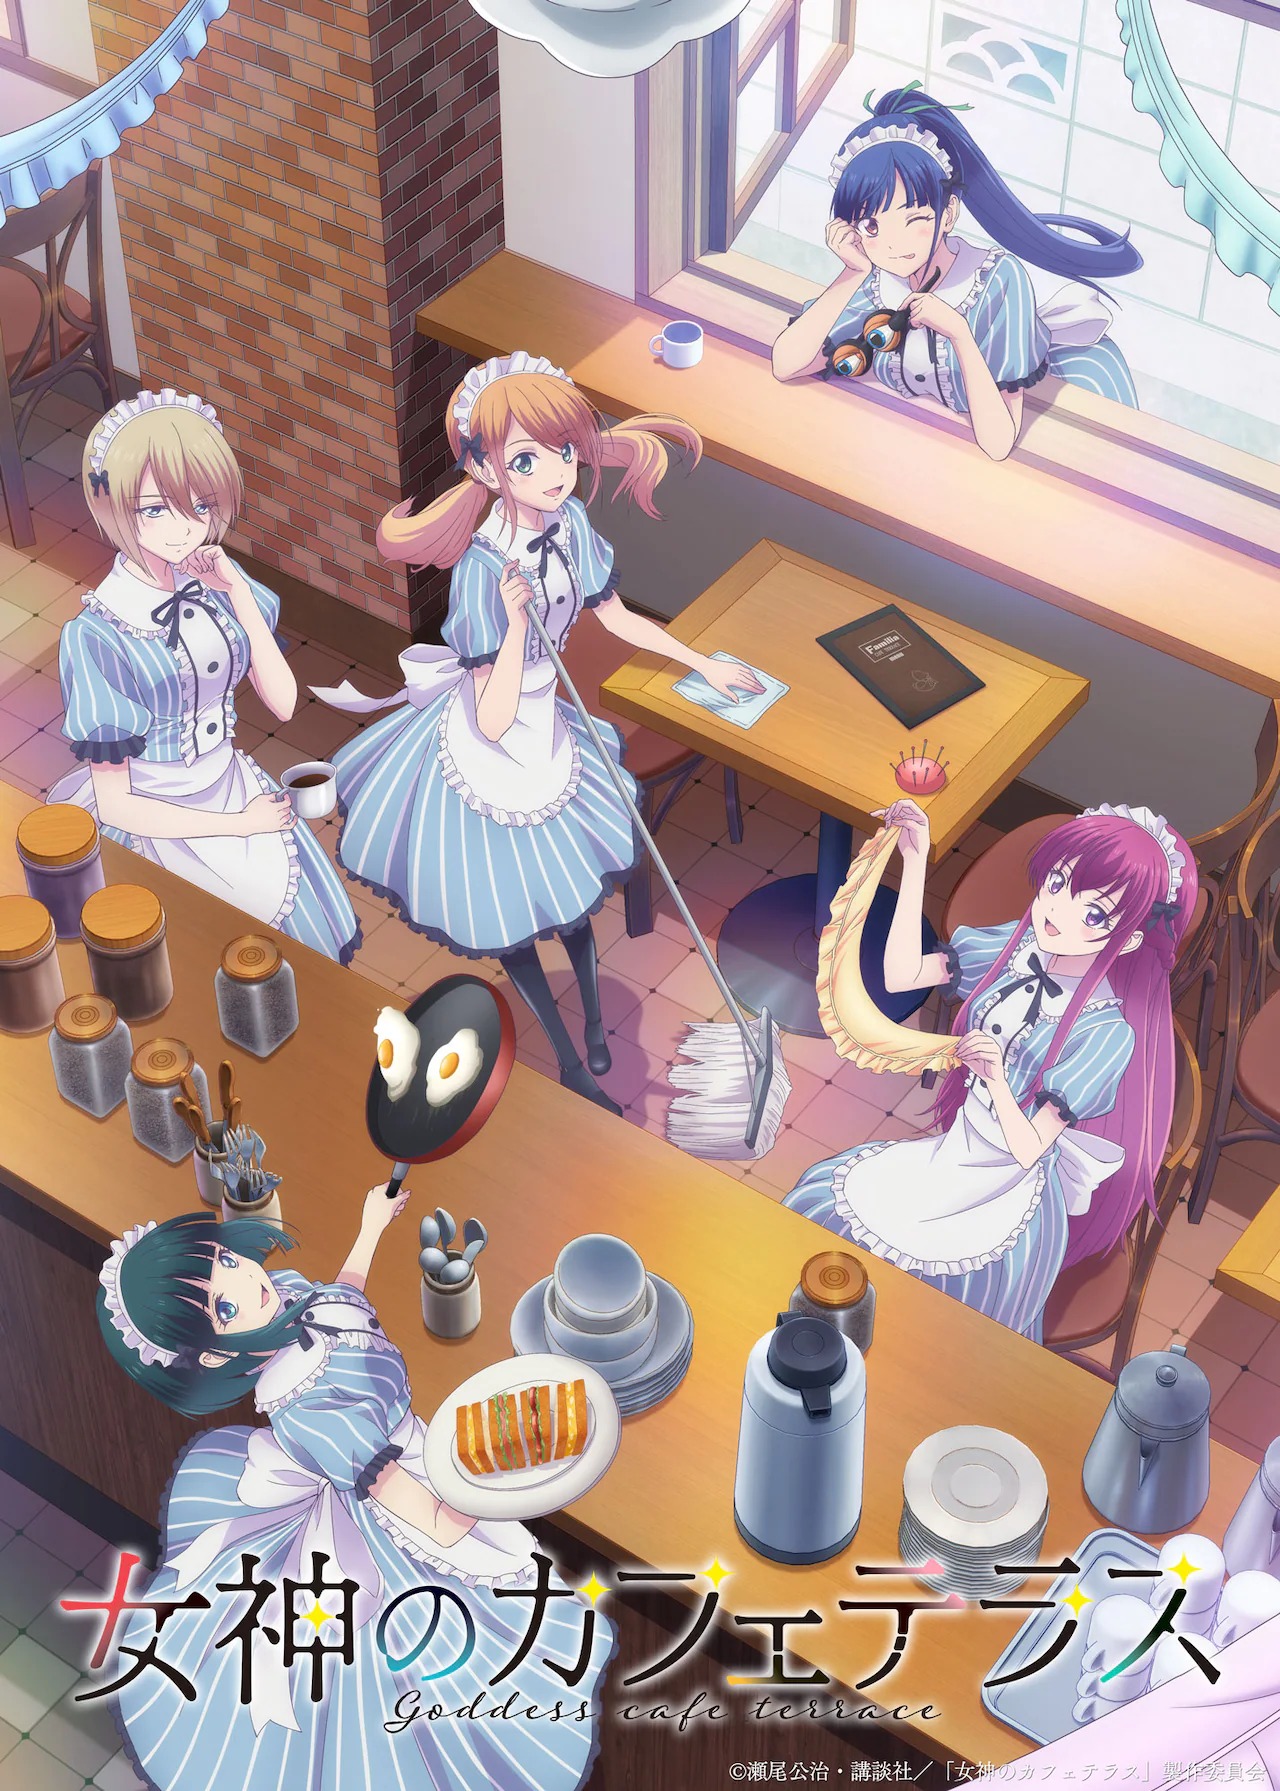 El anime Megami no Café Terrace revelo su primer video promocional y detalles